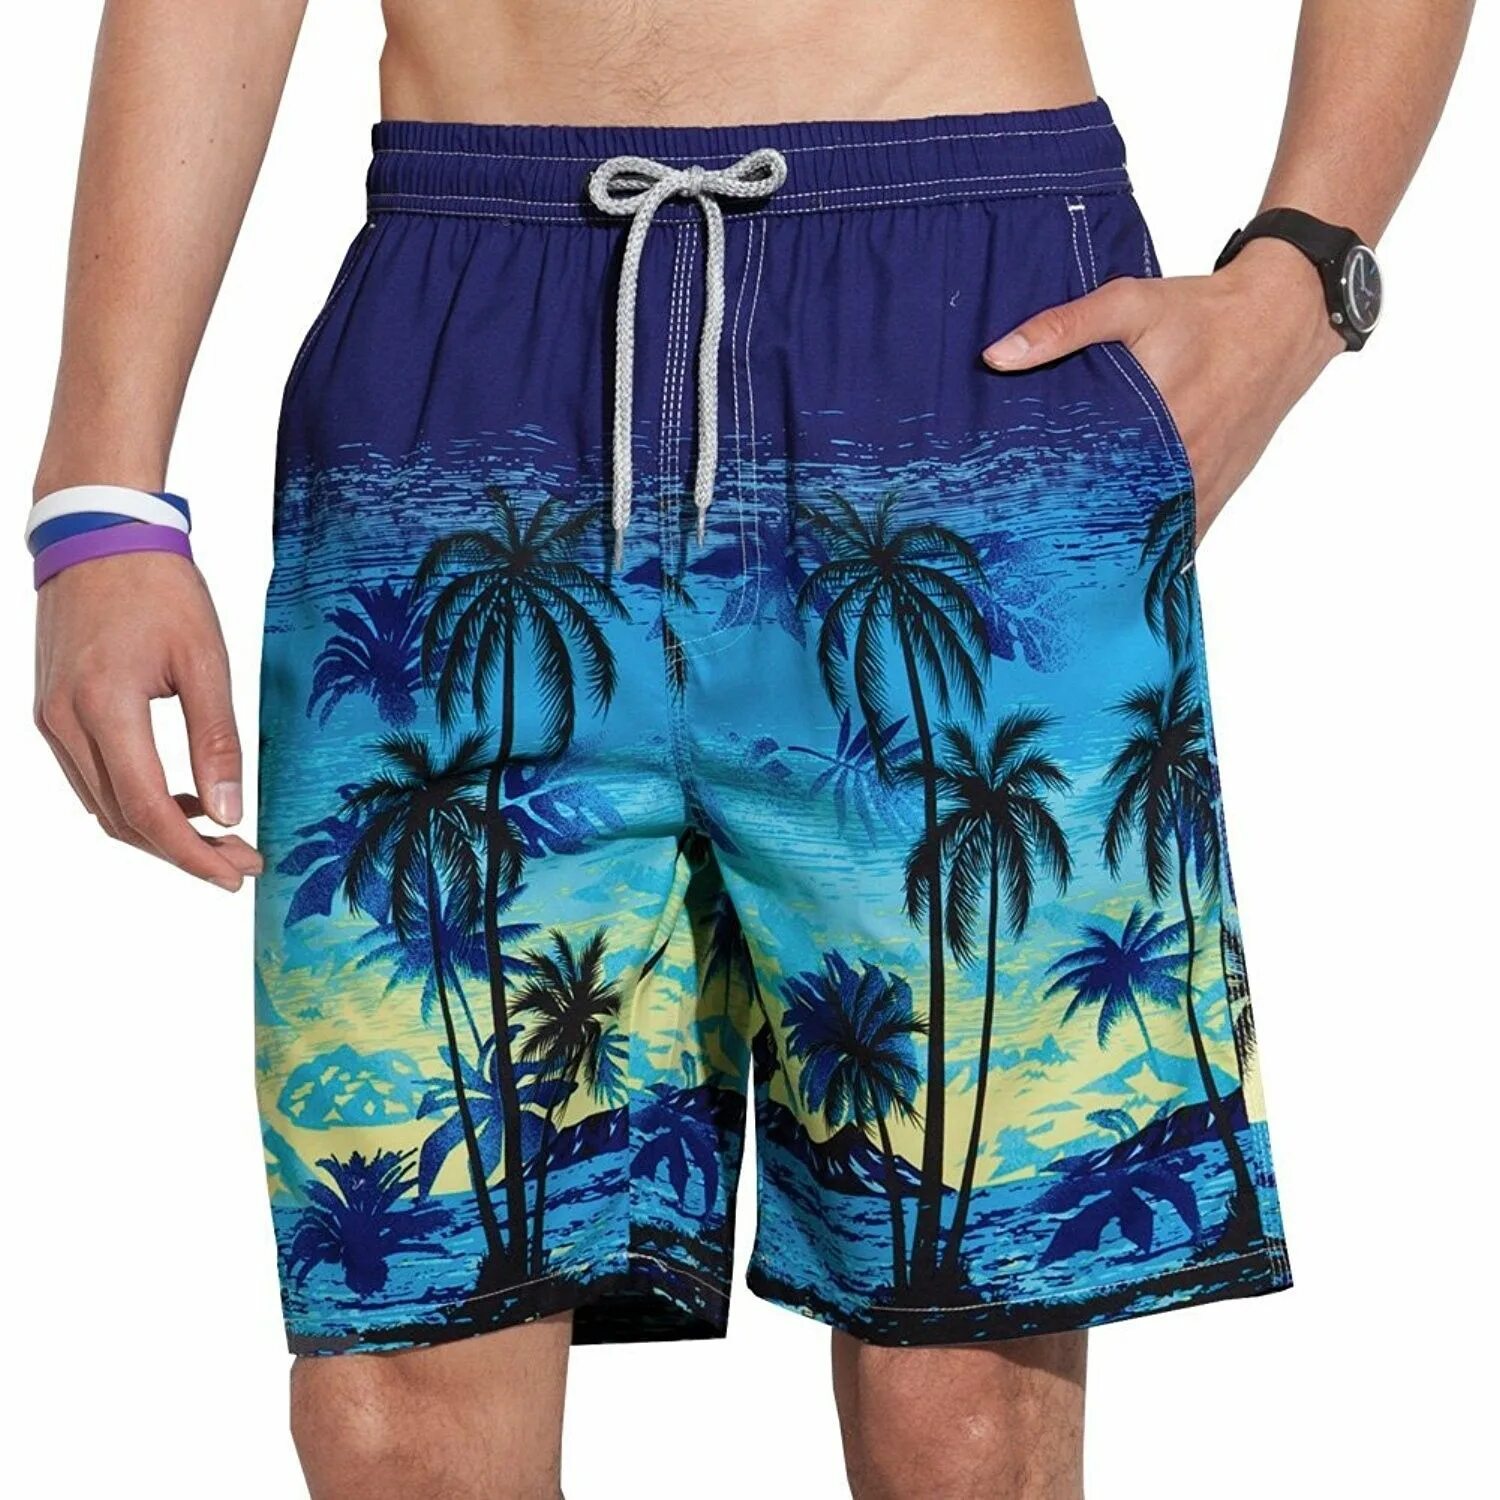 Reyn Spooner шорты мужские. Мужские плавательные шорты Venice Beach Eco. Плавательные шорты гуччи. Шорты с пальмами мужские. Шорты для пляжа